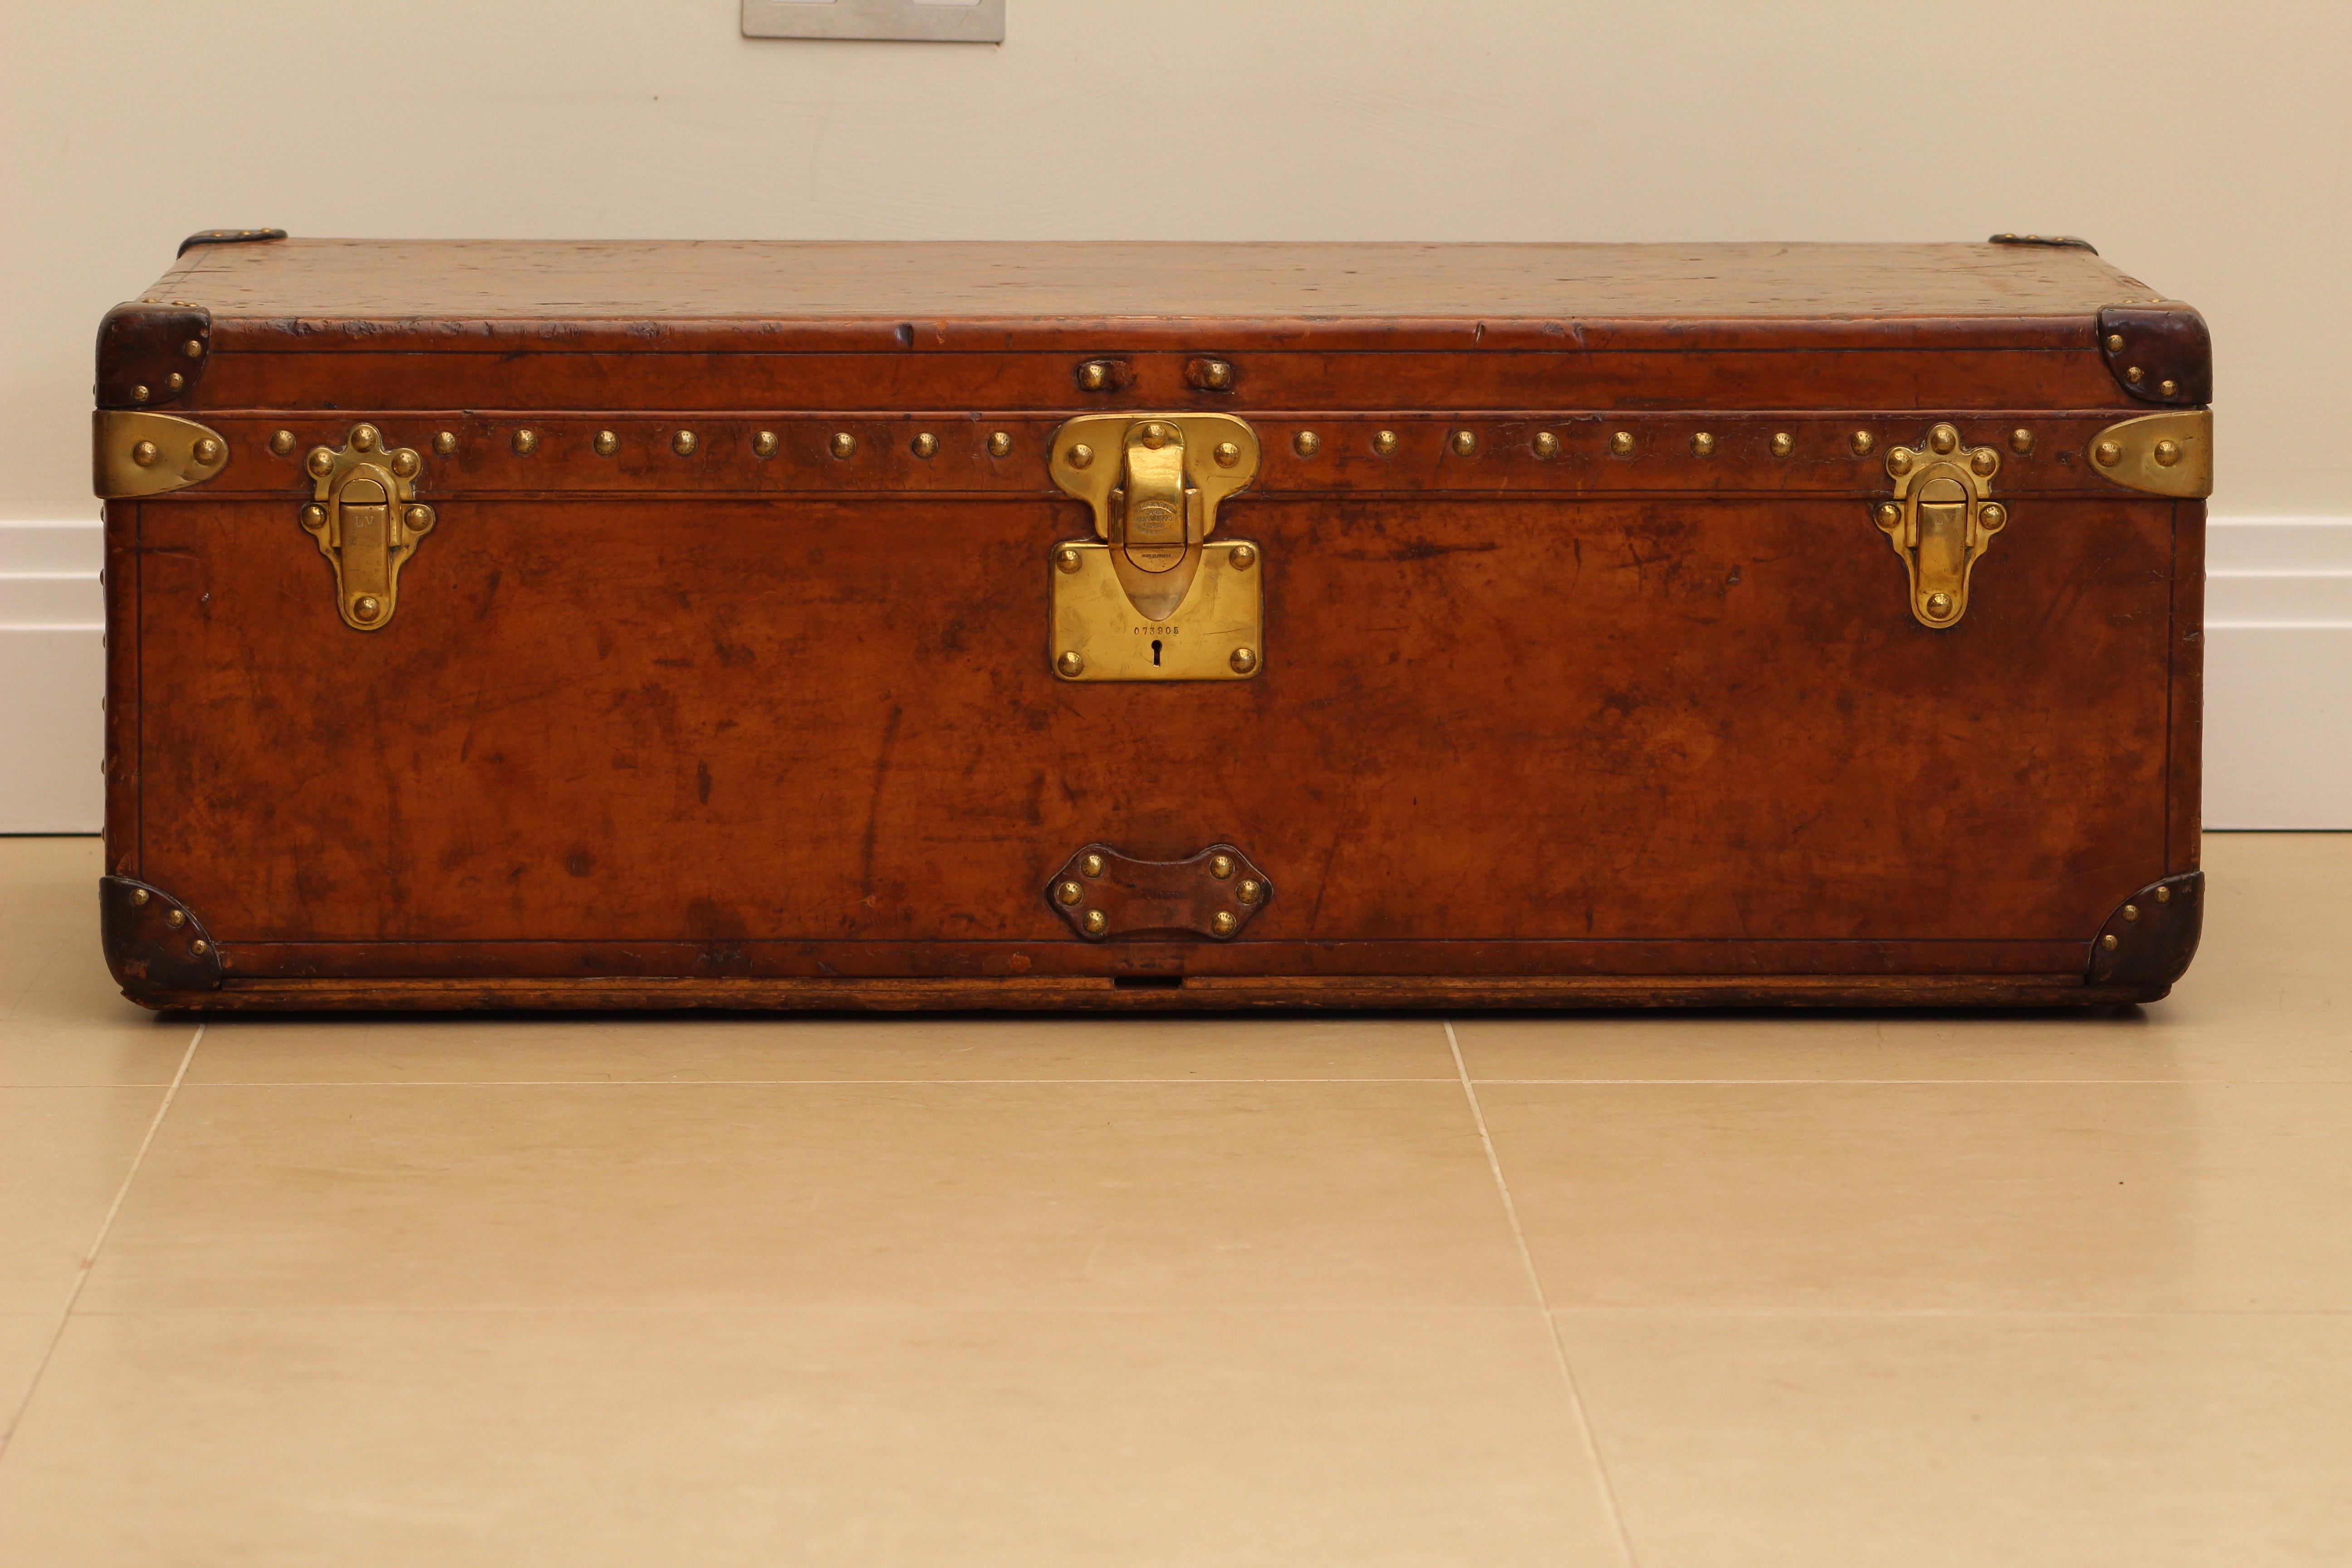 La malle de cabine en cuir de vache Louis Vuitton des années 1920 est un magnifique objet qui évoque une époque révolue où l'élégance du voyage et le style personnel allaient de pair. Cette malle, au design sophistiqué et à la fabrication